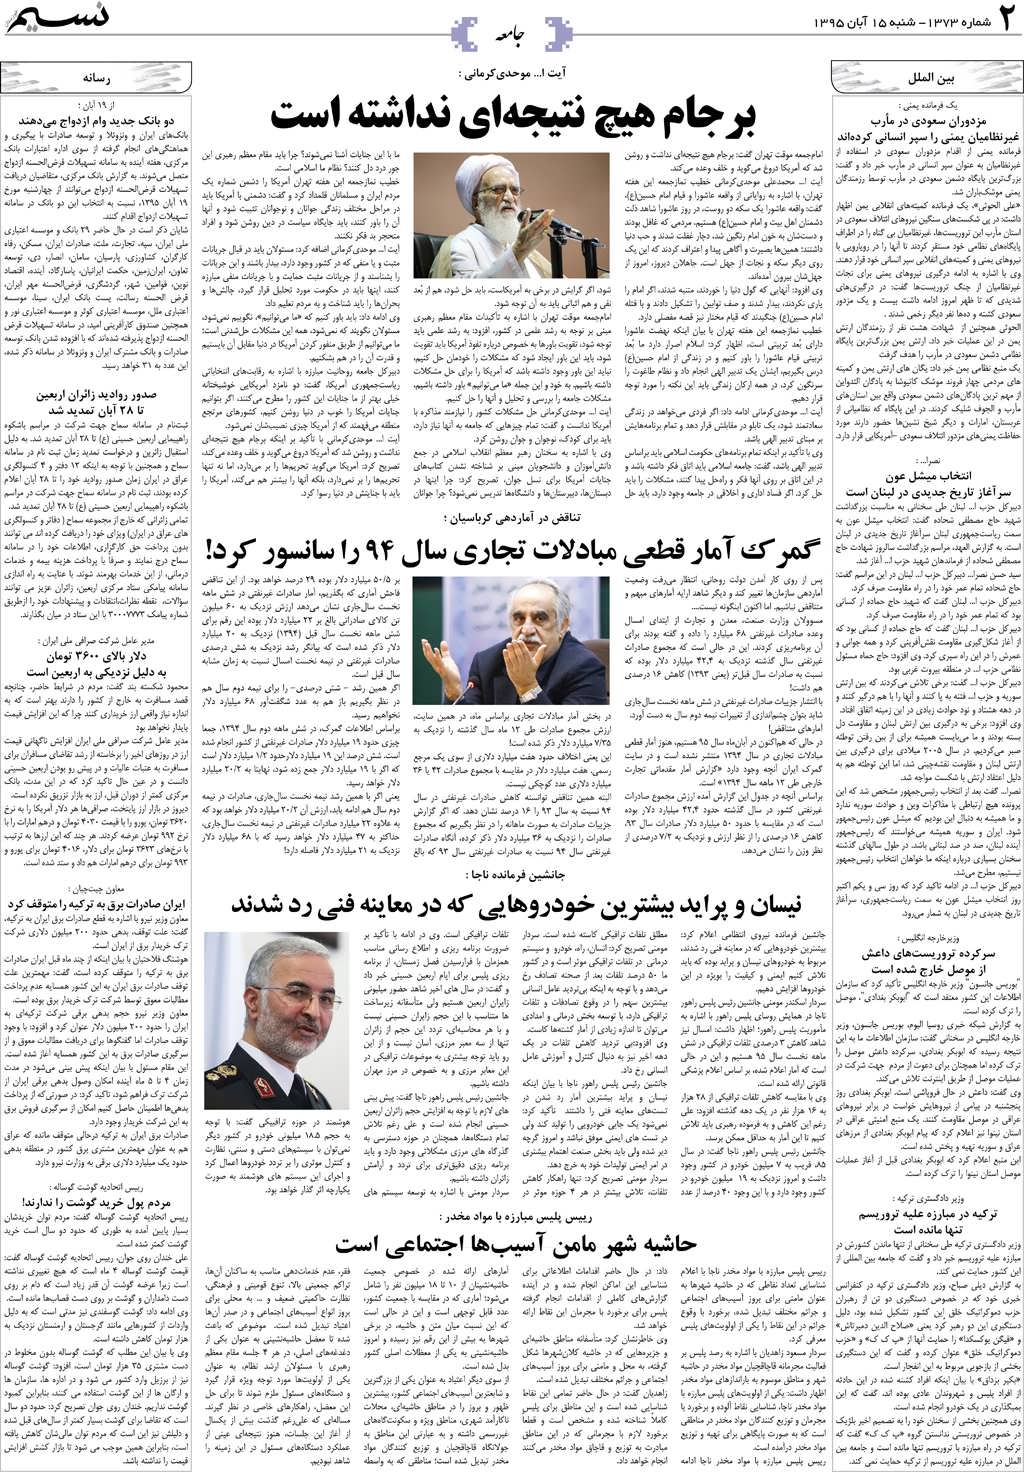 صفحه جامعه روزنامه نسیم شماره 1373